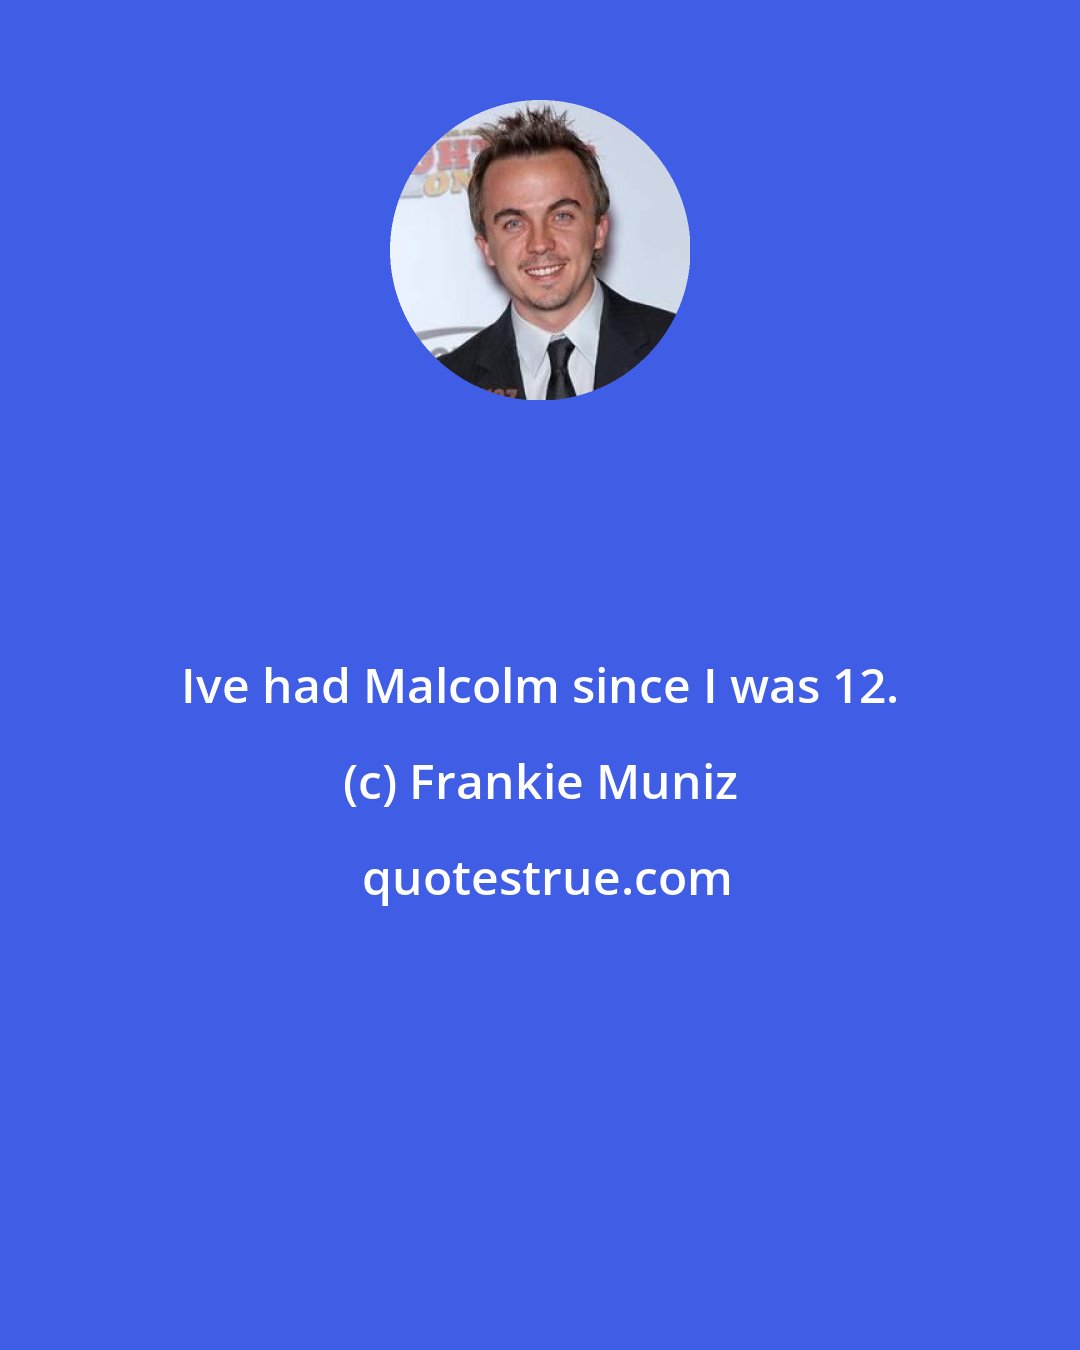 Frankie Muniz: Ive had Malcolm since I was 12.